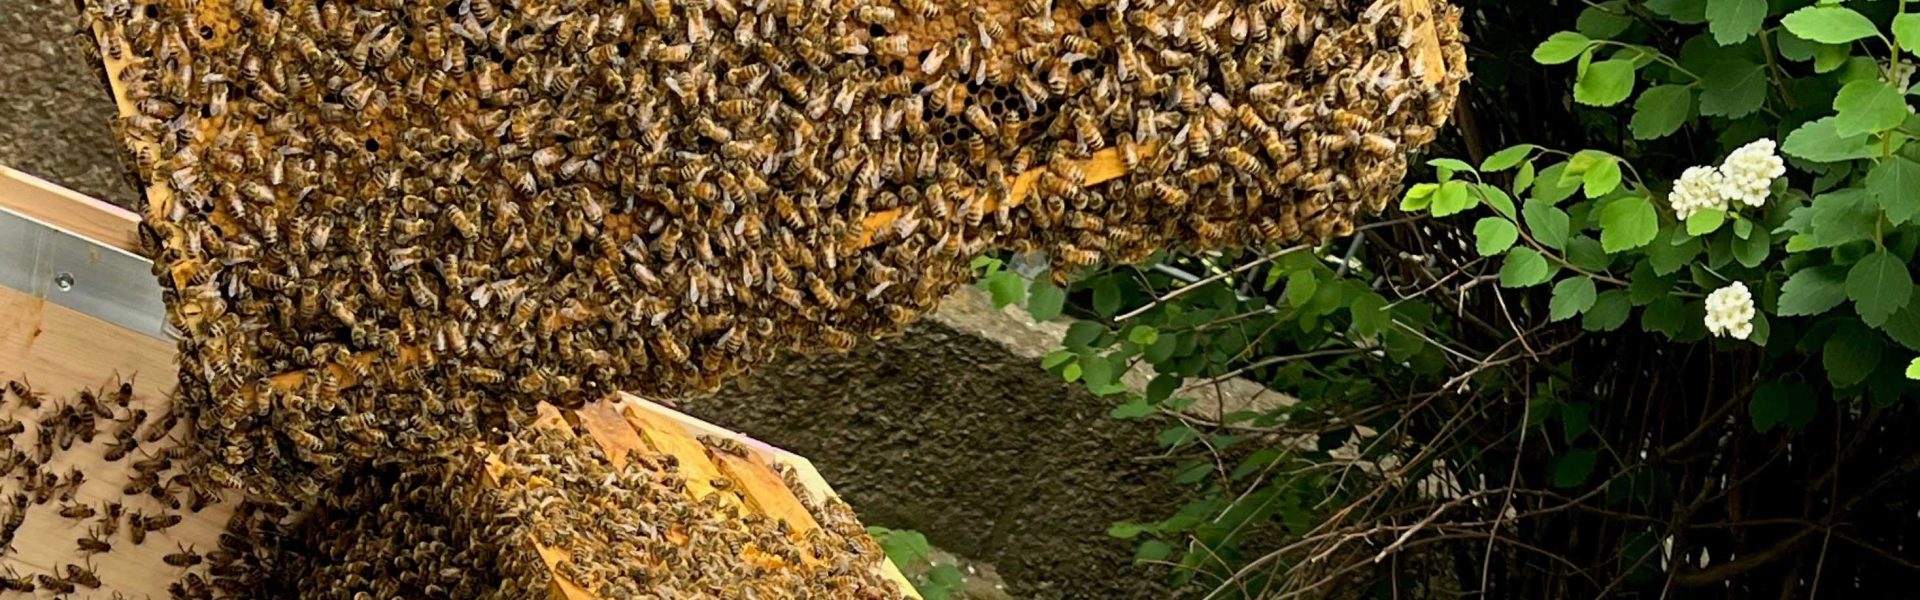 Header Bild Verteilnetzbetreiber stellt Bienenstock auf